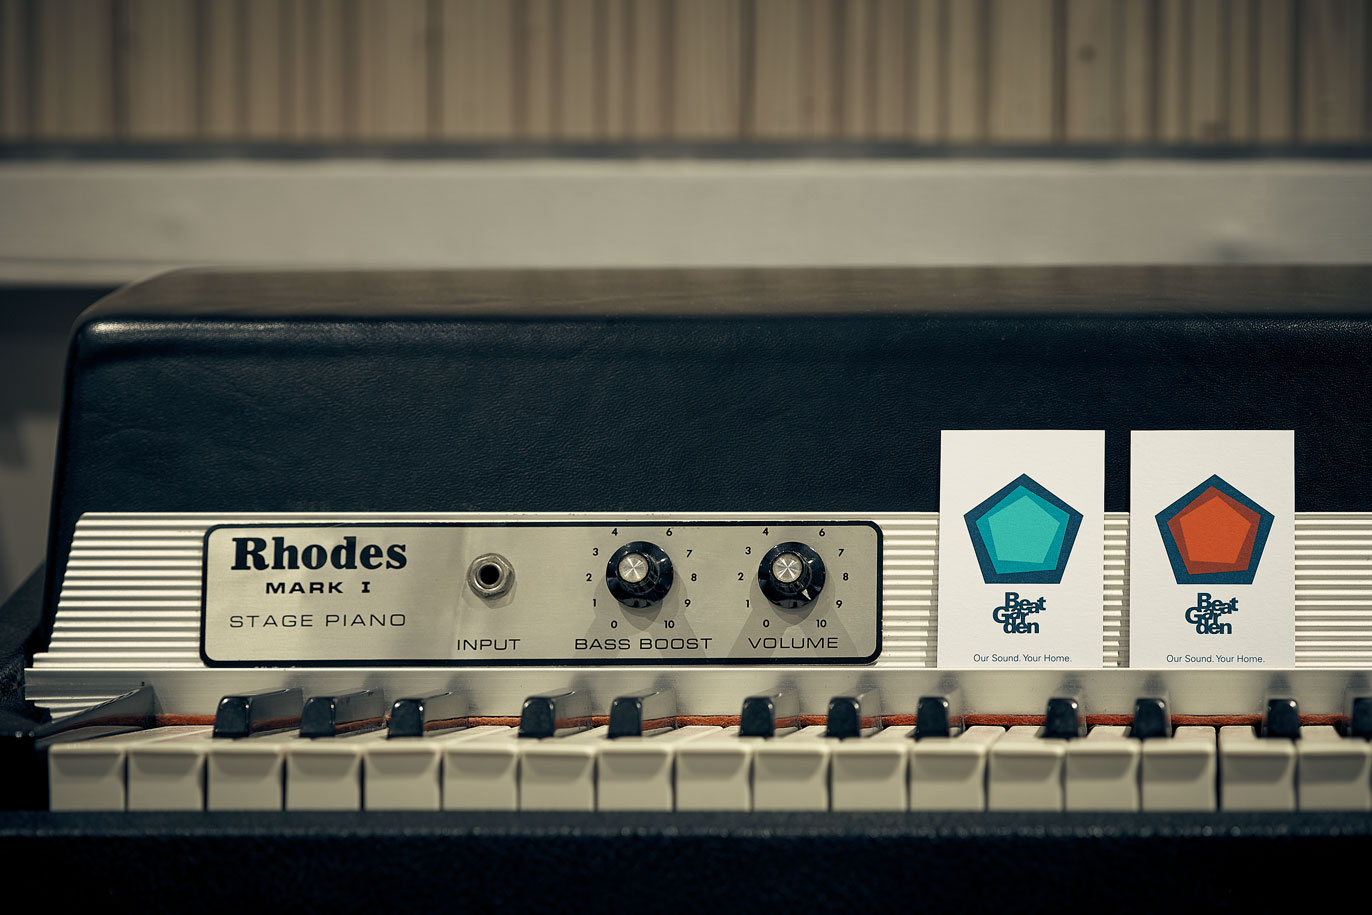 Tarjetas de visita con nuevo logotipo del estudio de grabación BeatGarden sobre Fender Rhodes